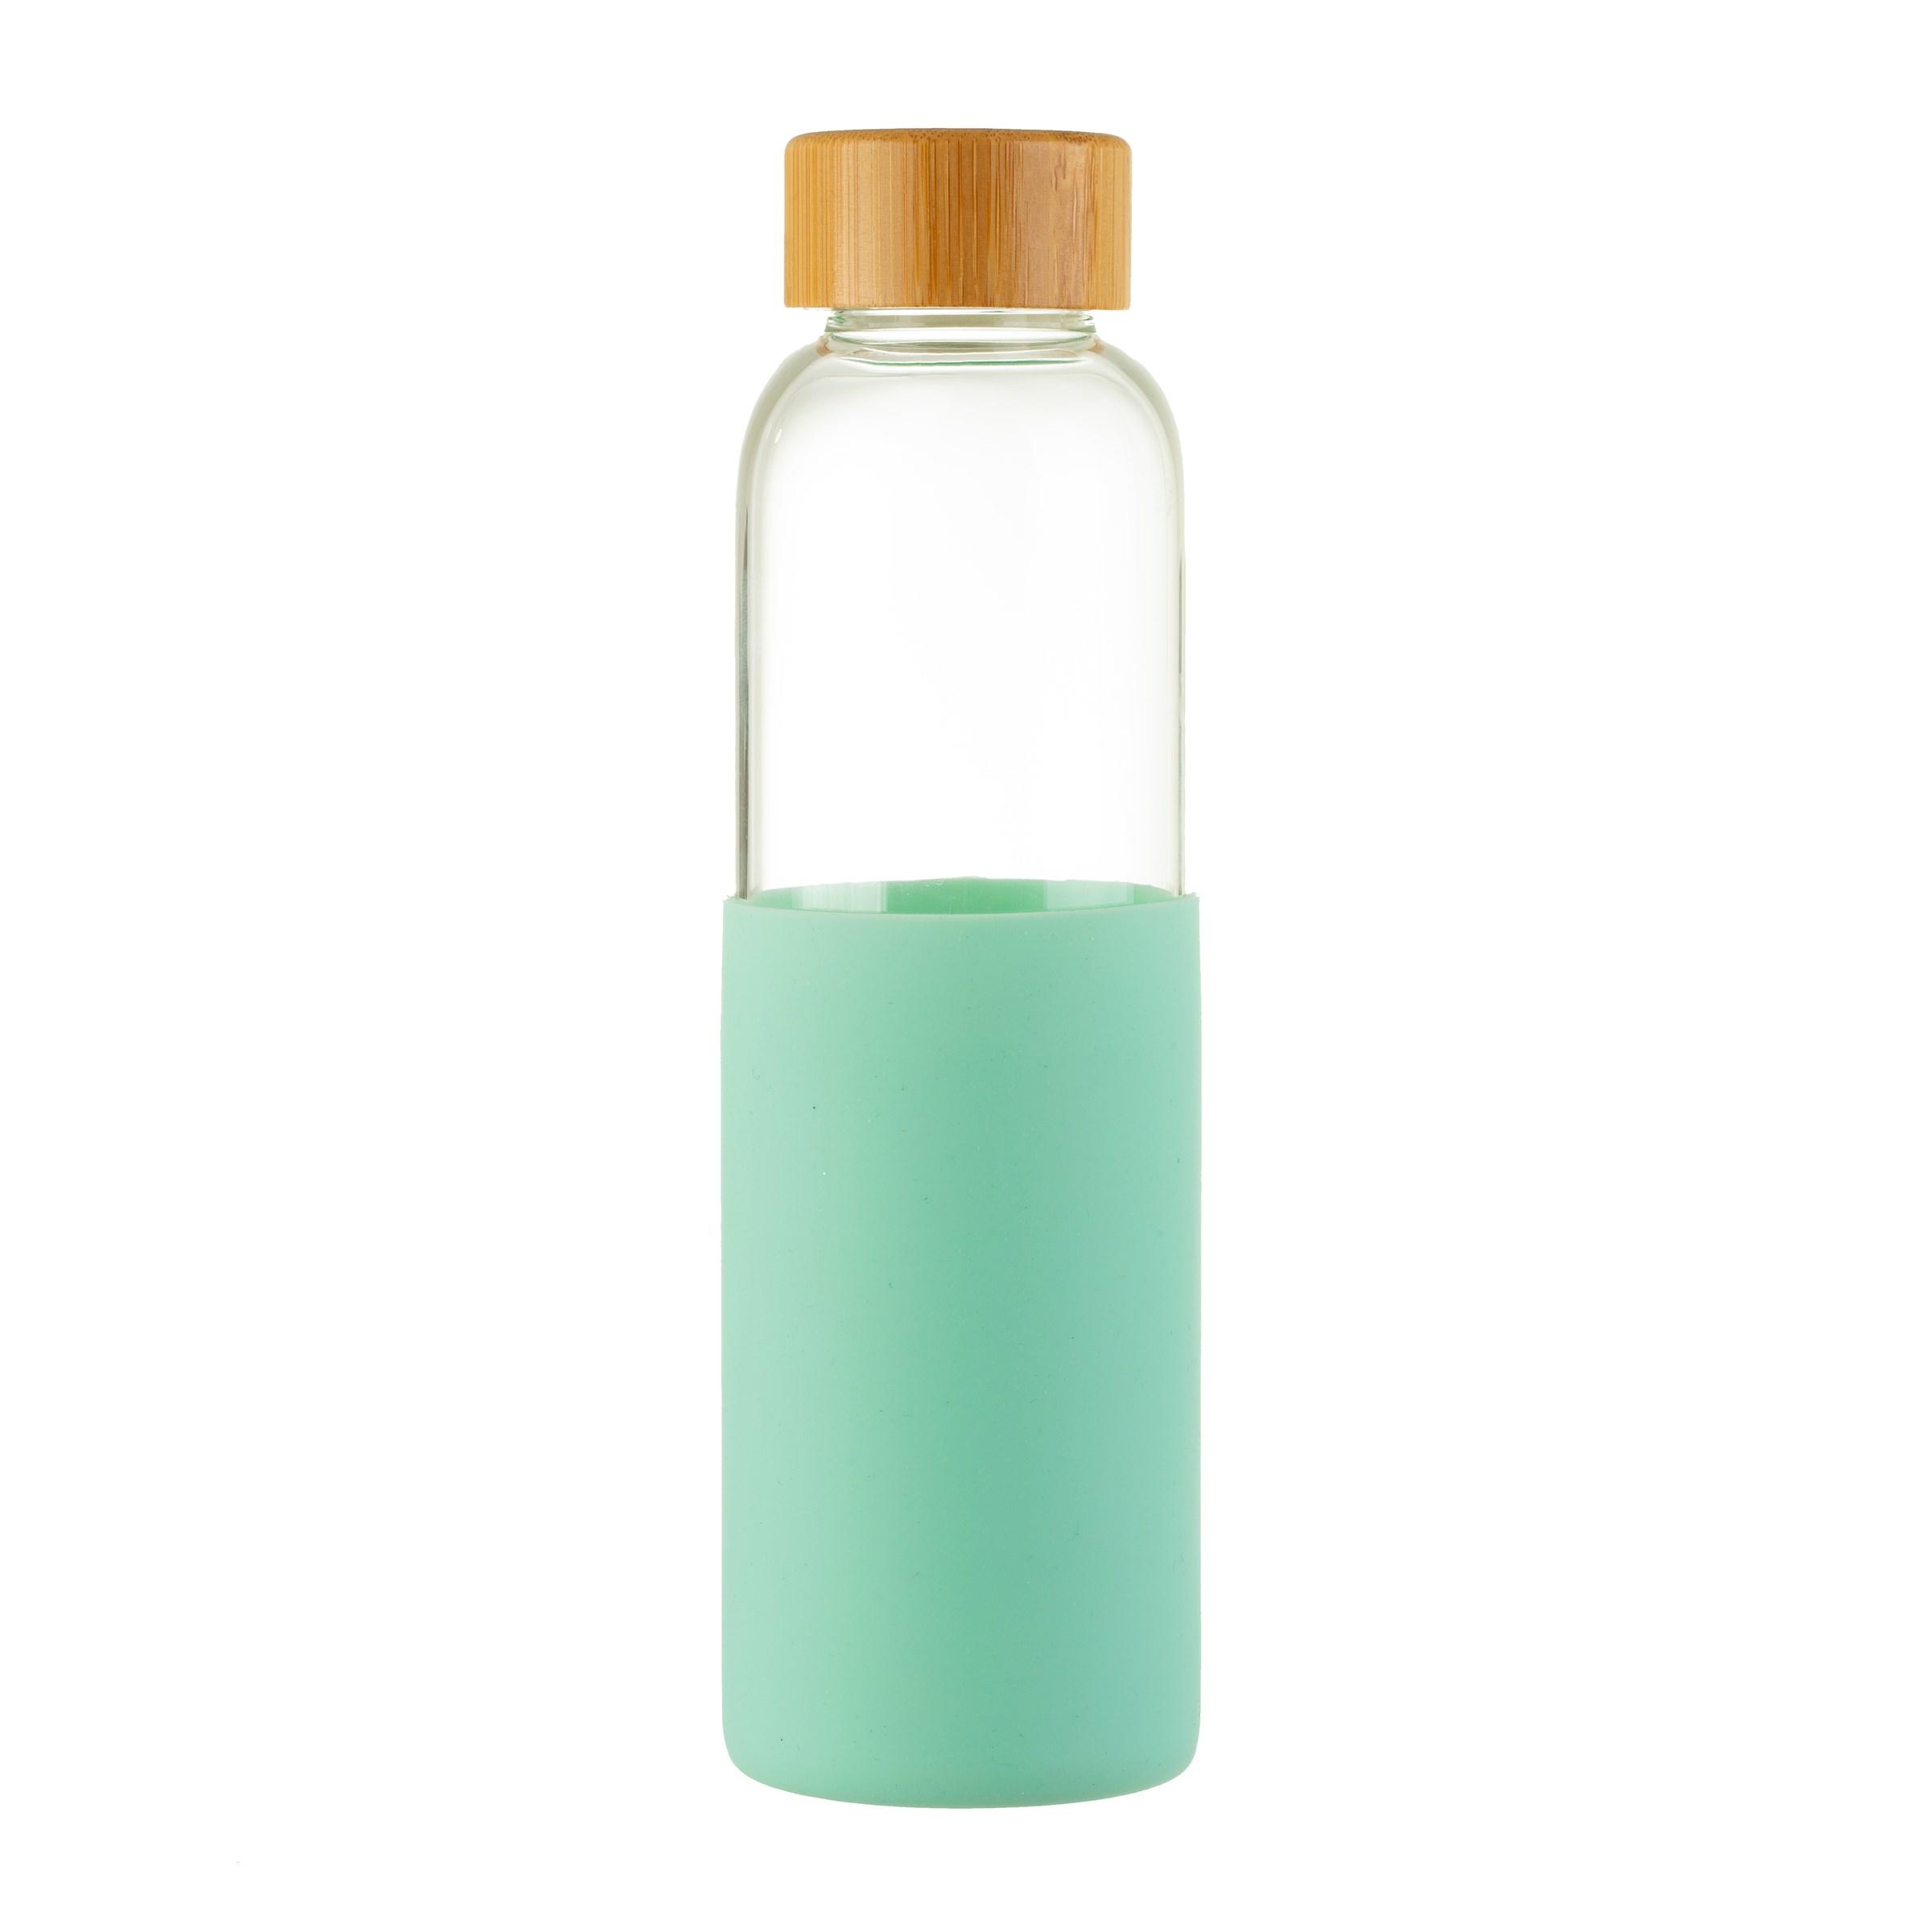 glass green bottle